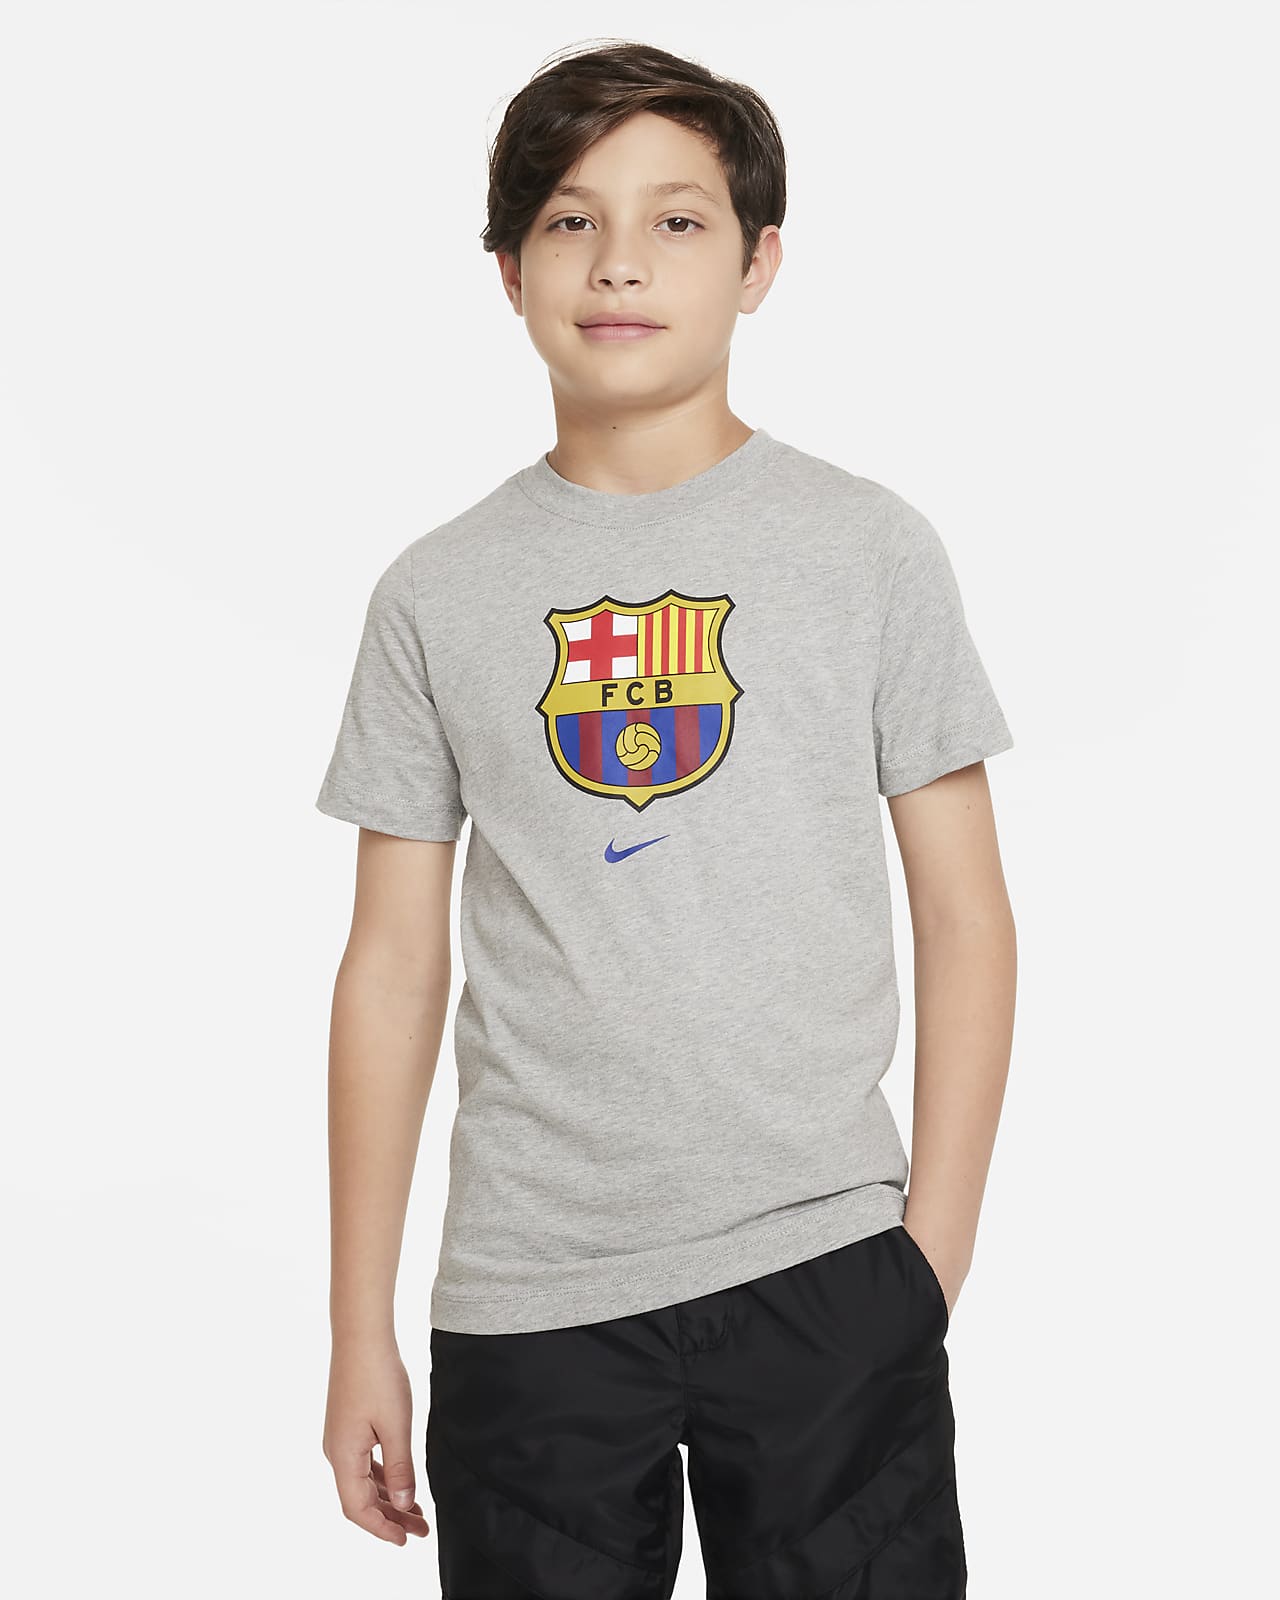 F.C. Barcelona Crest Older Kids' Nike T-Shirt